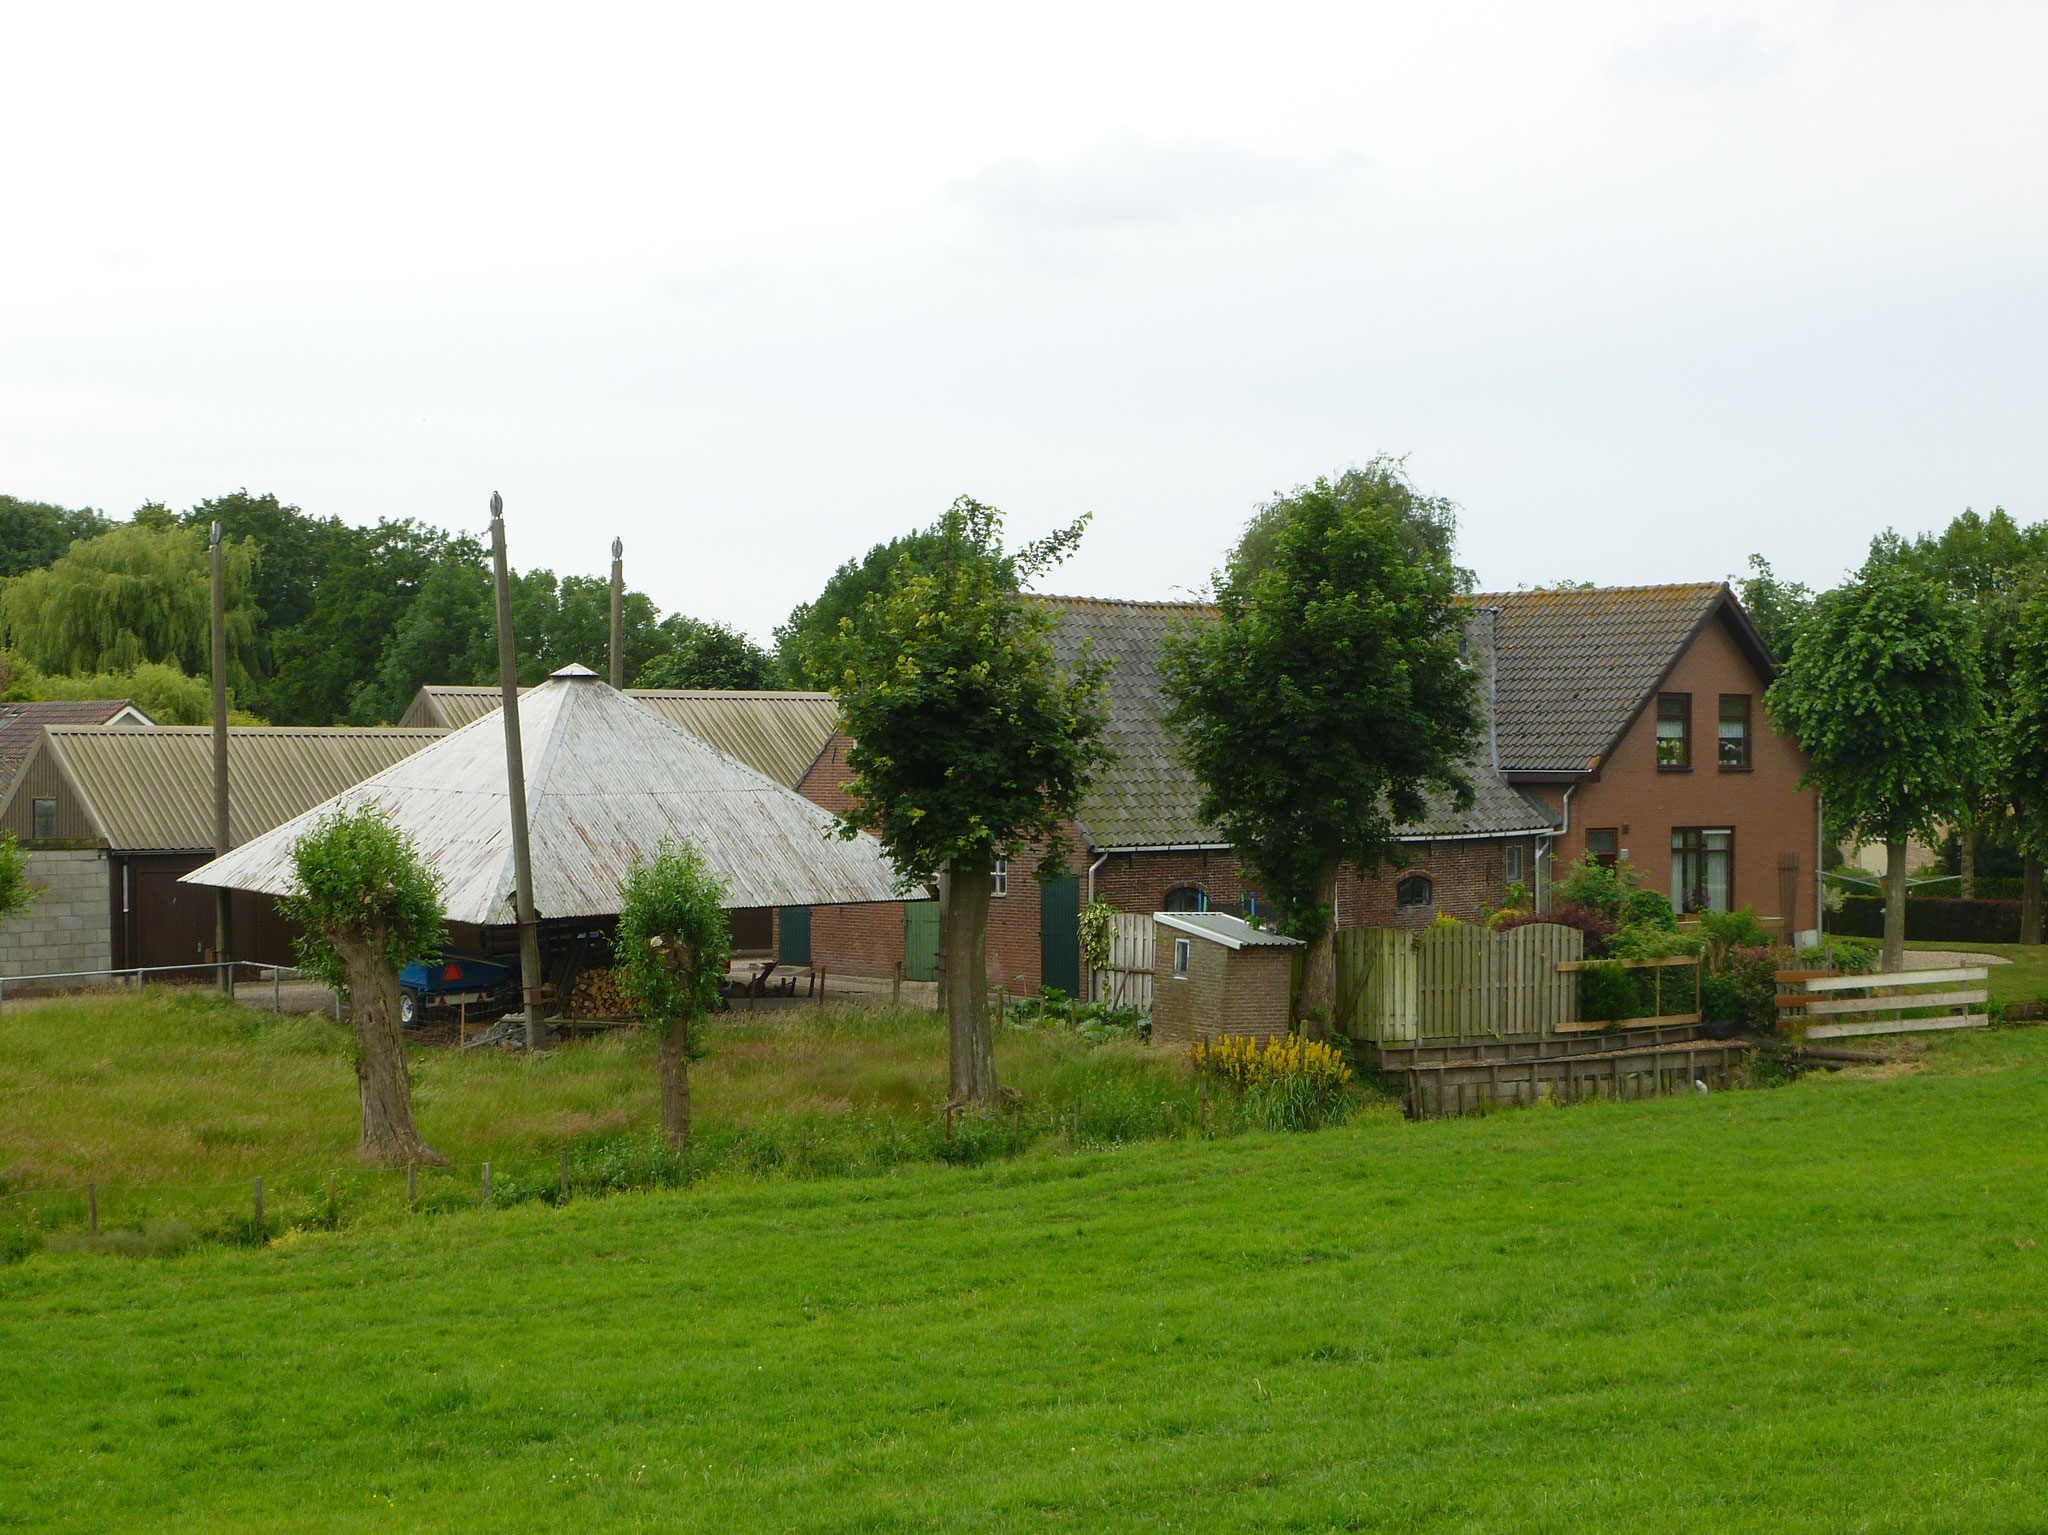 Ringdijk, Traditioneller Bauernhof.